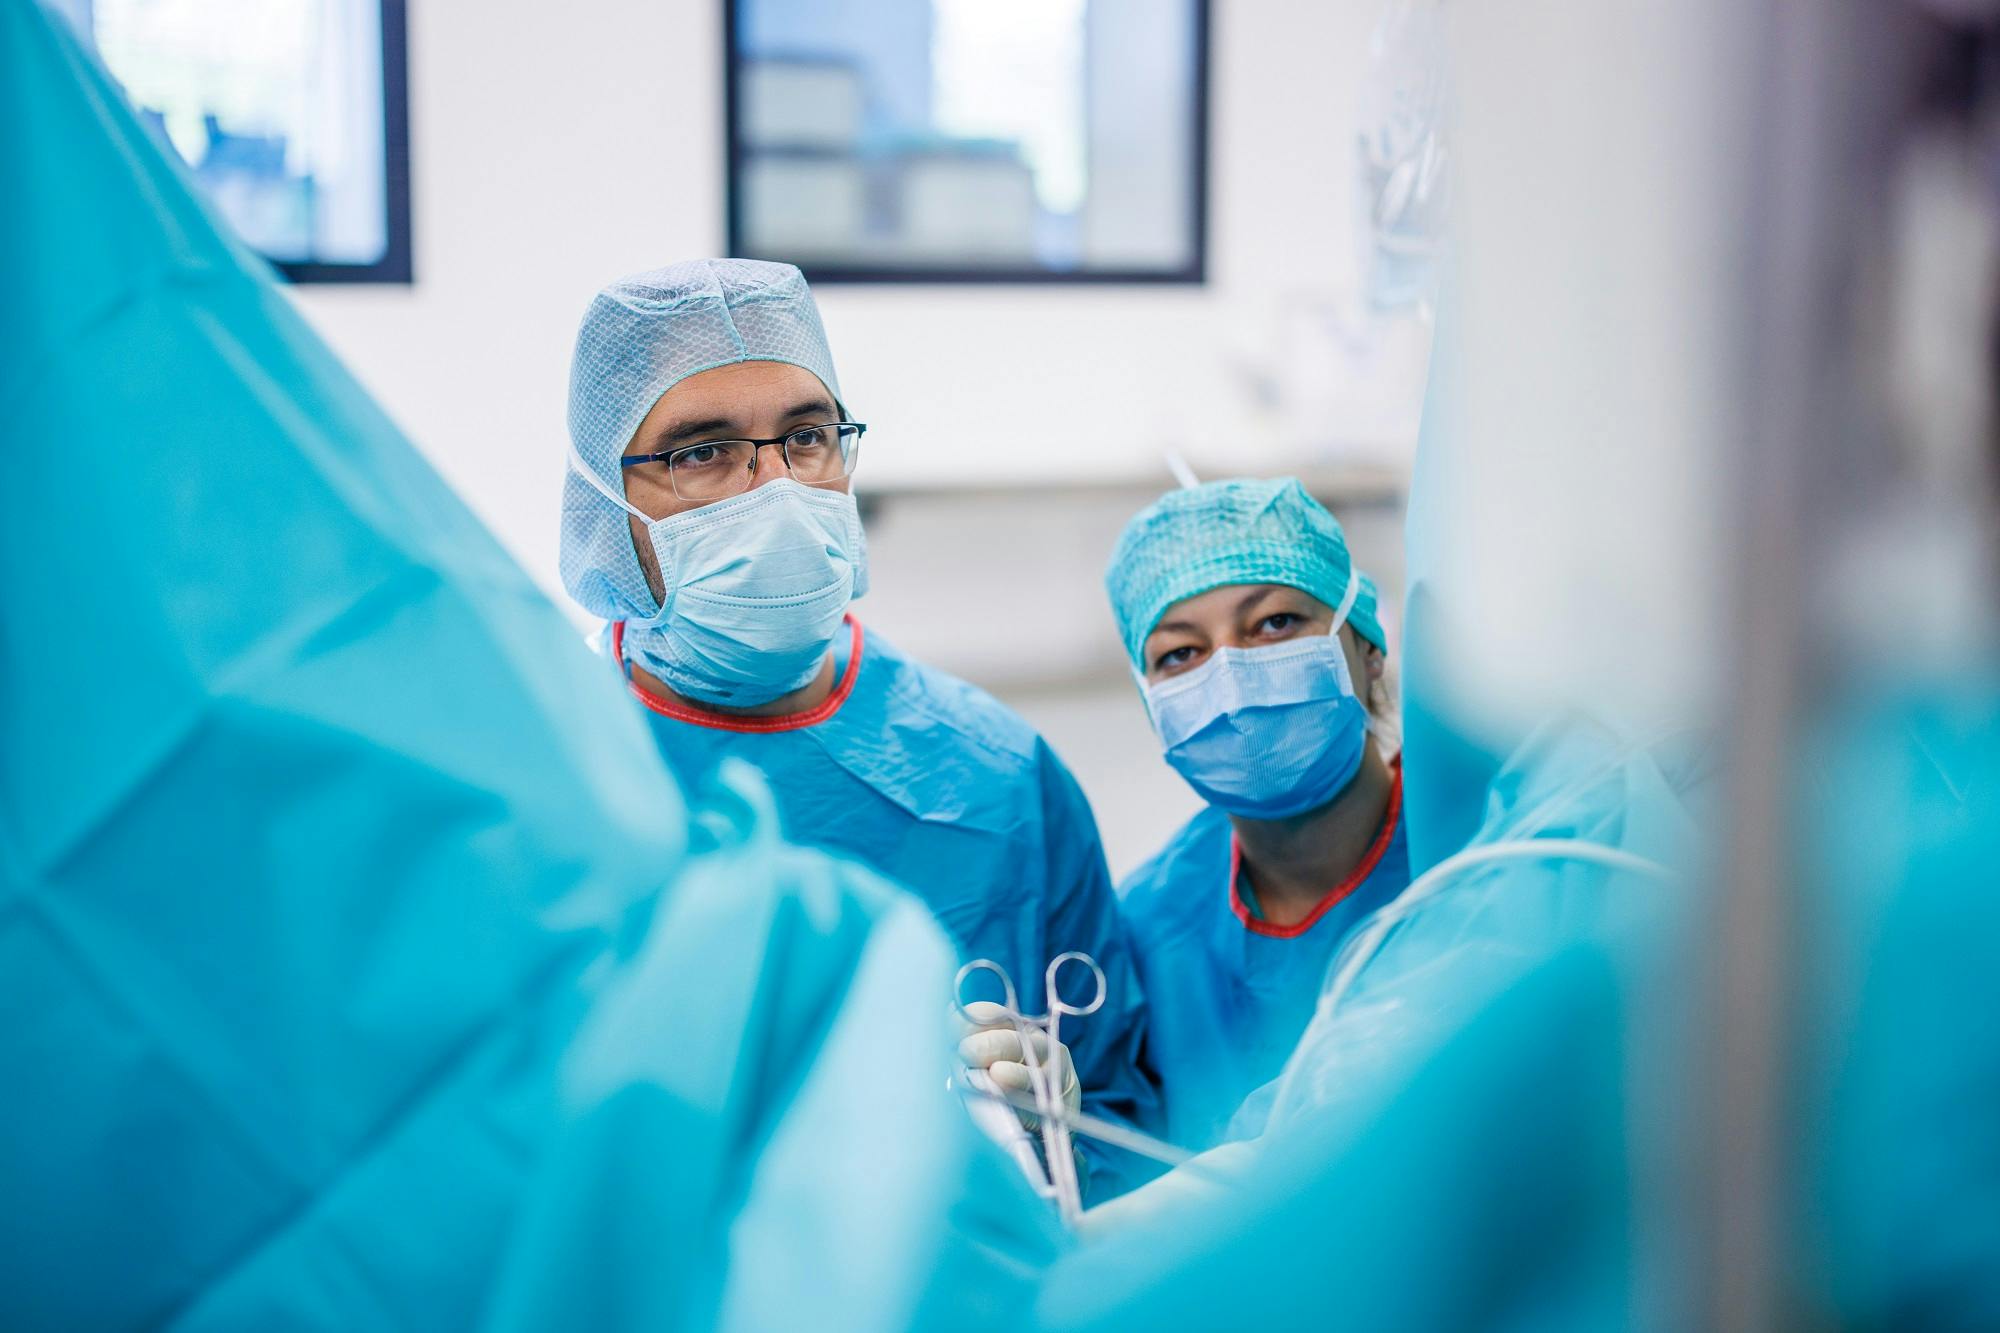 Chirurgen im OP-Saal mit medizinischer Ausrüstung und Schutzkleidung.